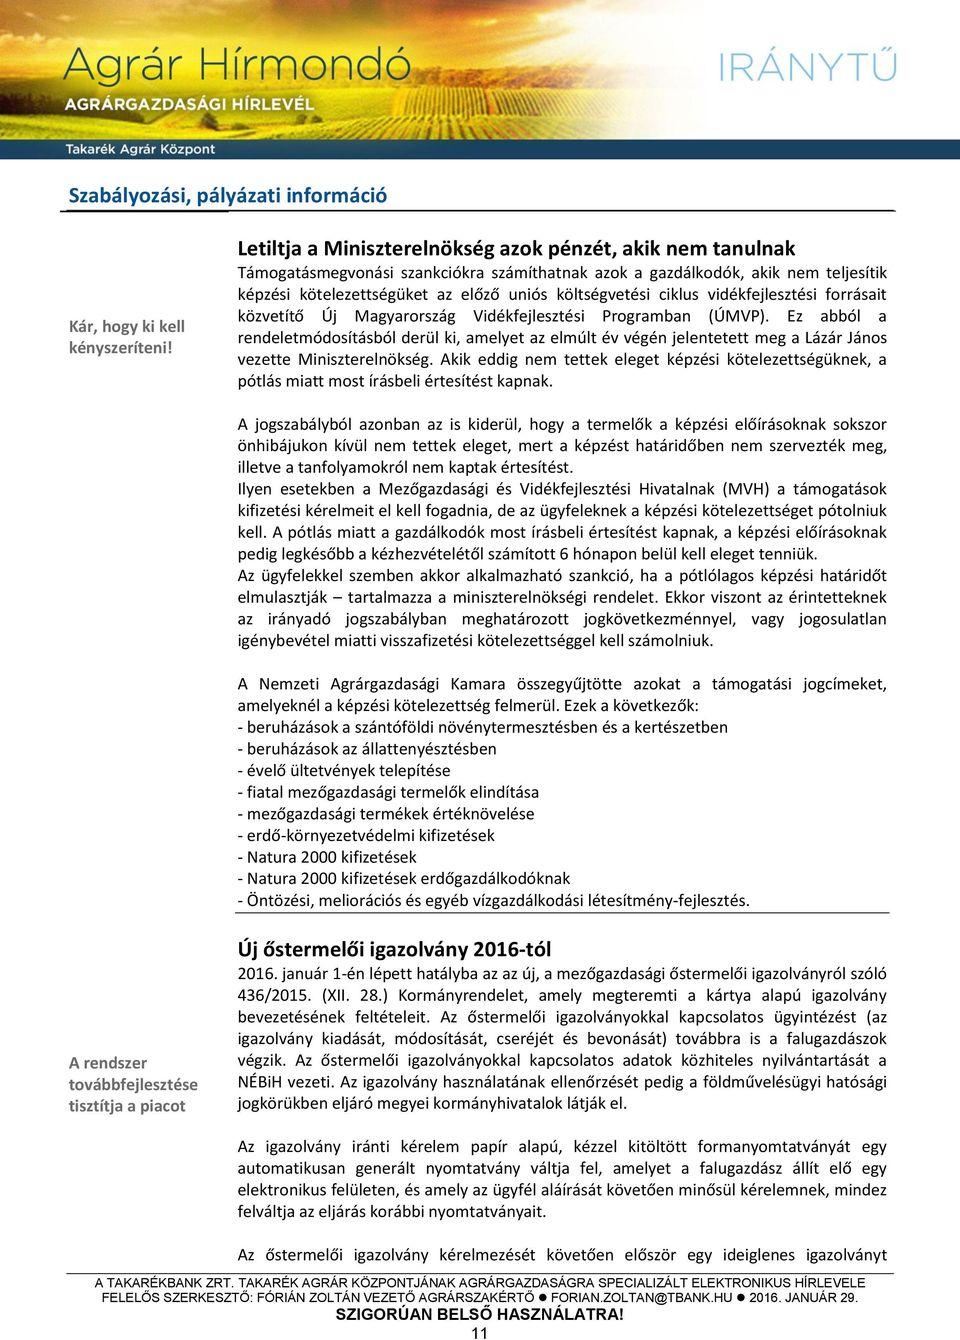 ciklus vidékfejlesztési forrásait közvetítő Új Magyarország Vidékfejlesztési Programban (ÚMVP).